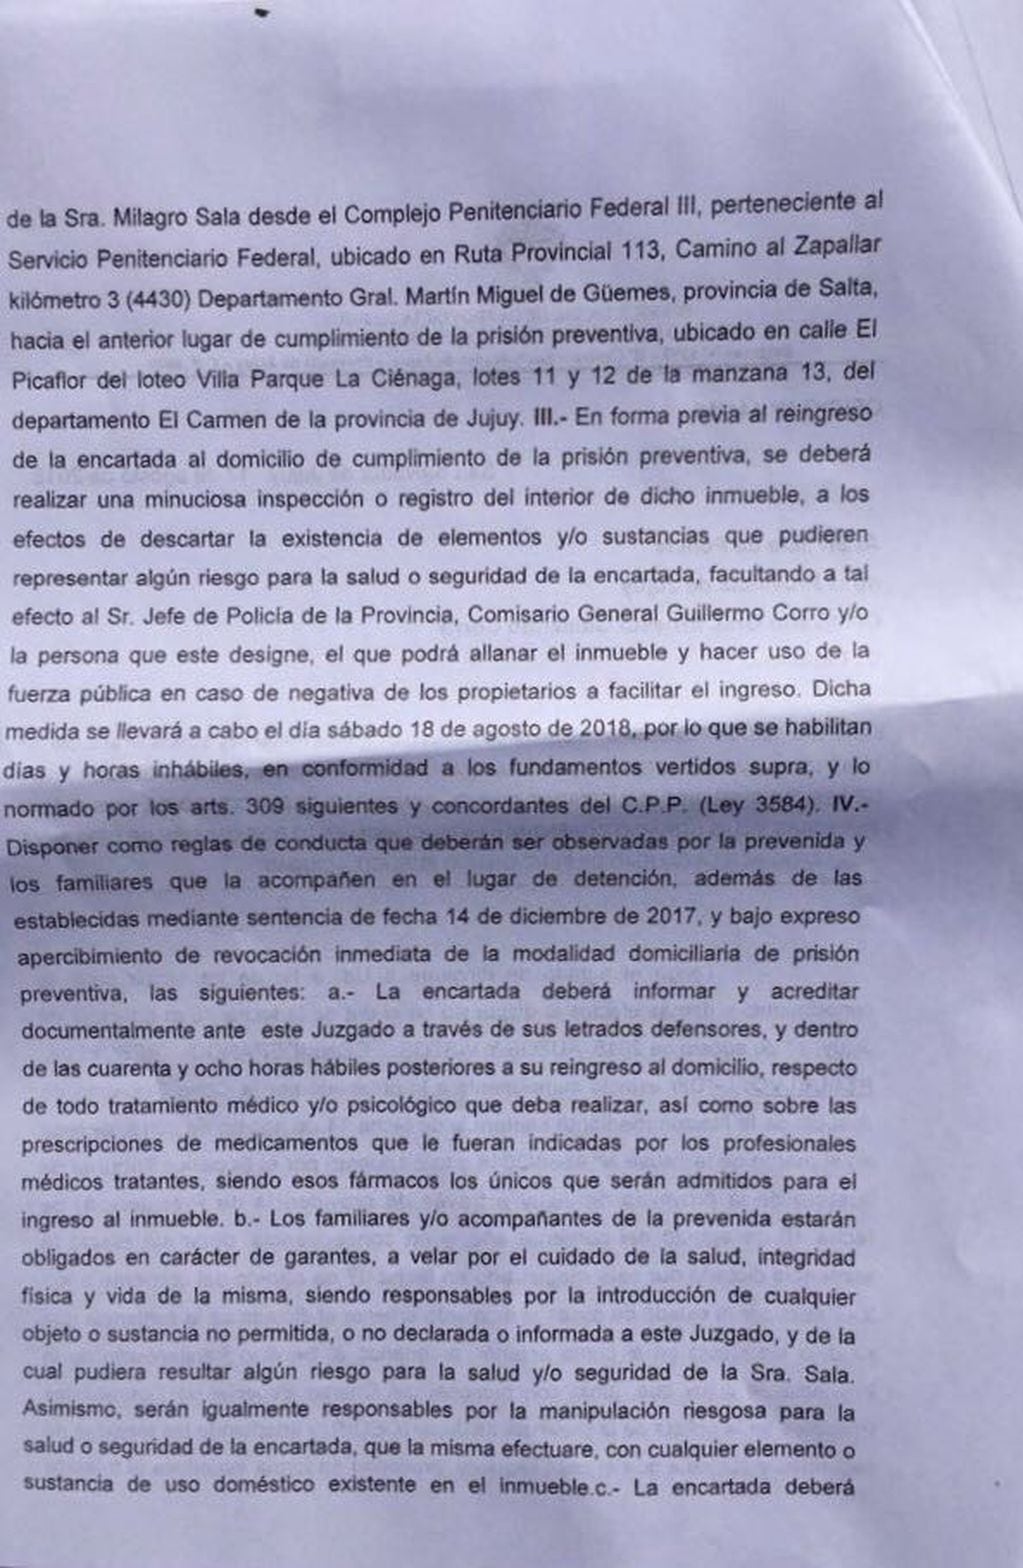 Segunda parte de la resolución del juez sobre la prisión domiciliaria de Milagro Sala